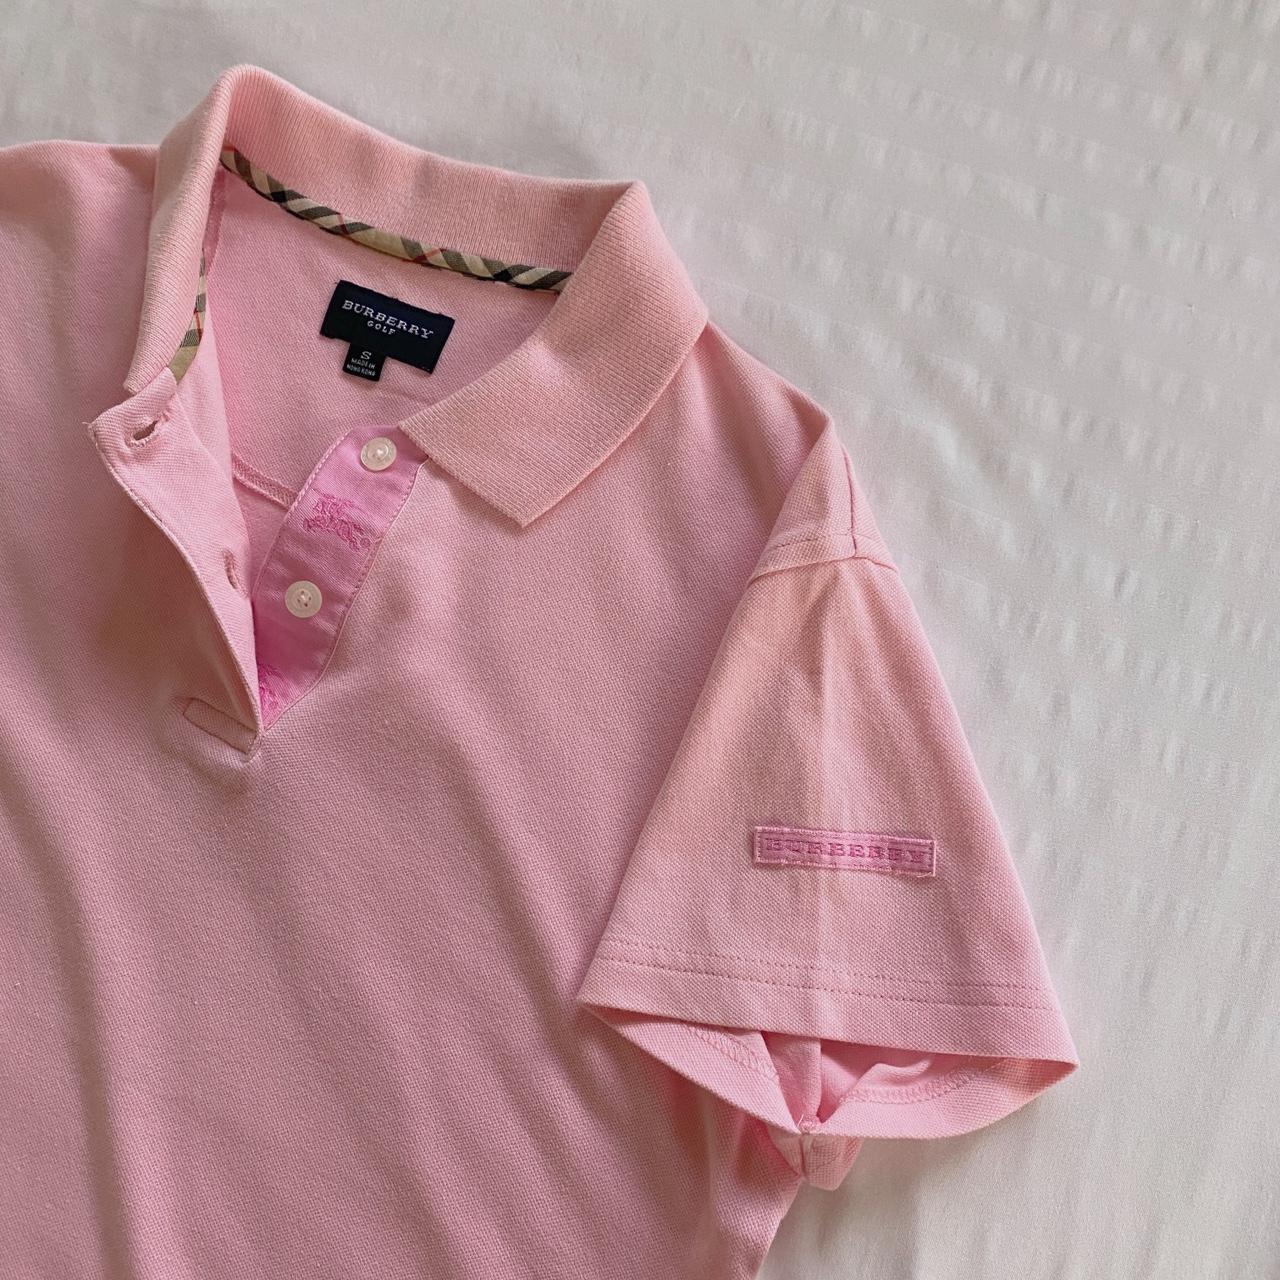 Burberry Women's Pink T-shirt (2)